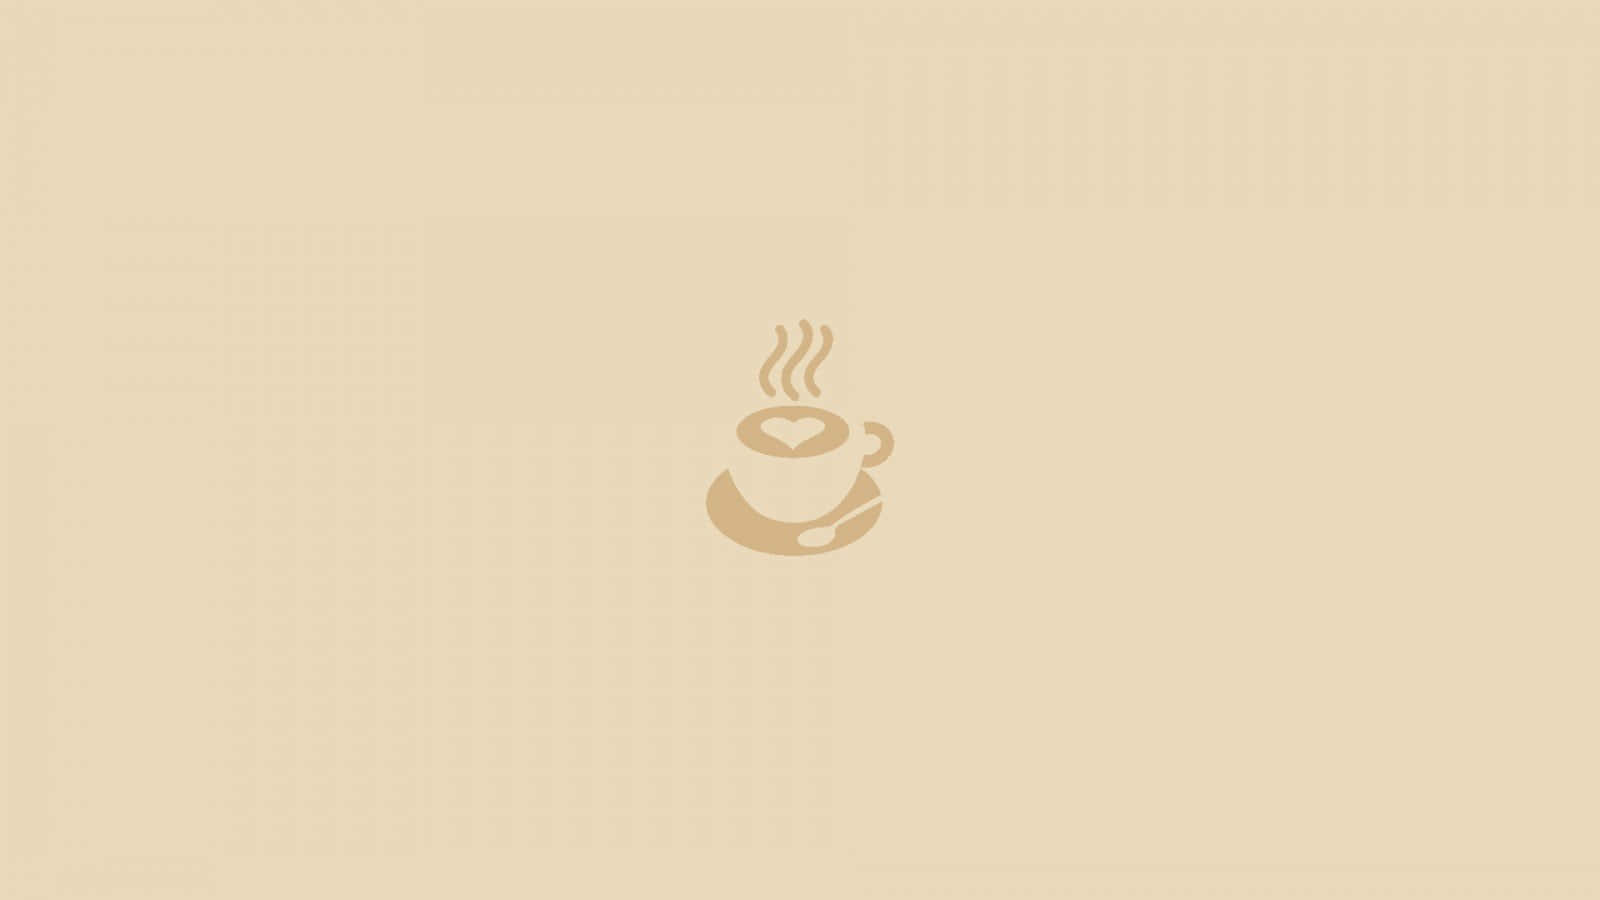 Kaffeelogodesign - Eine Kaffeetasse Mit Einer Kaffeetasse